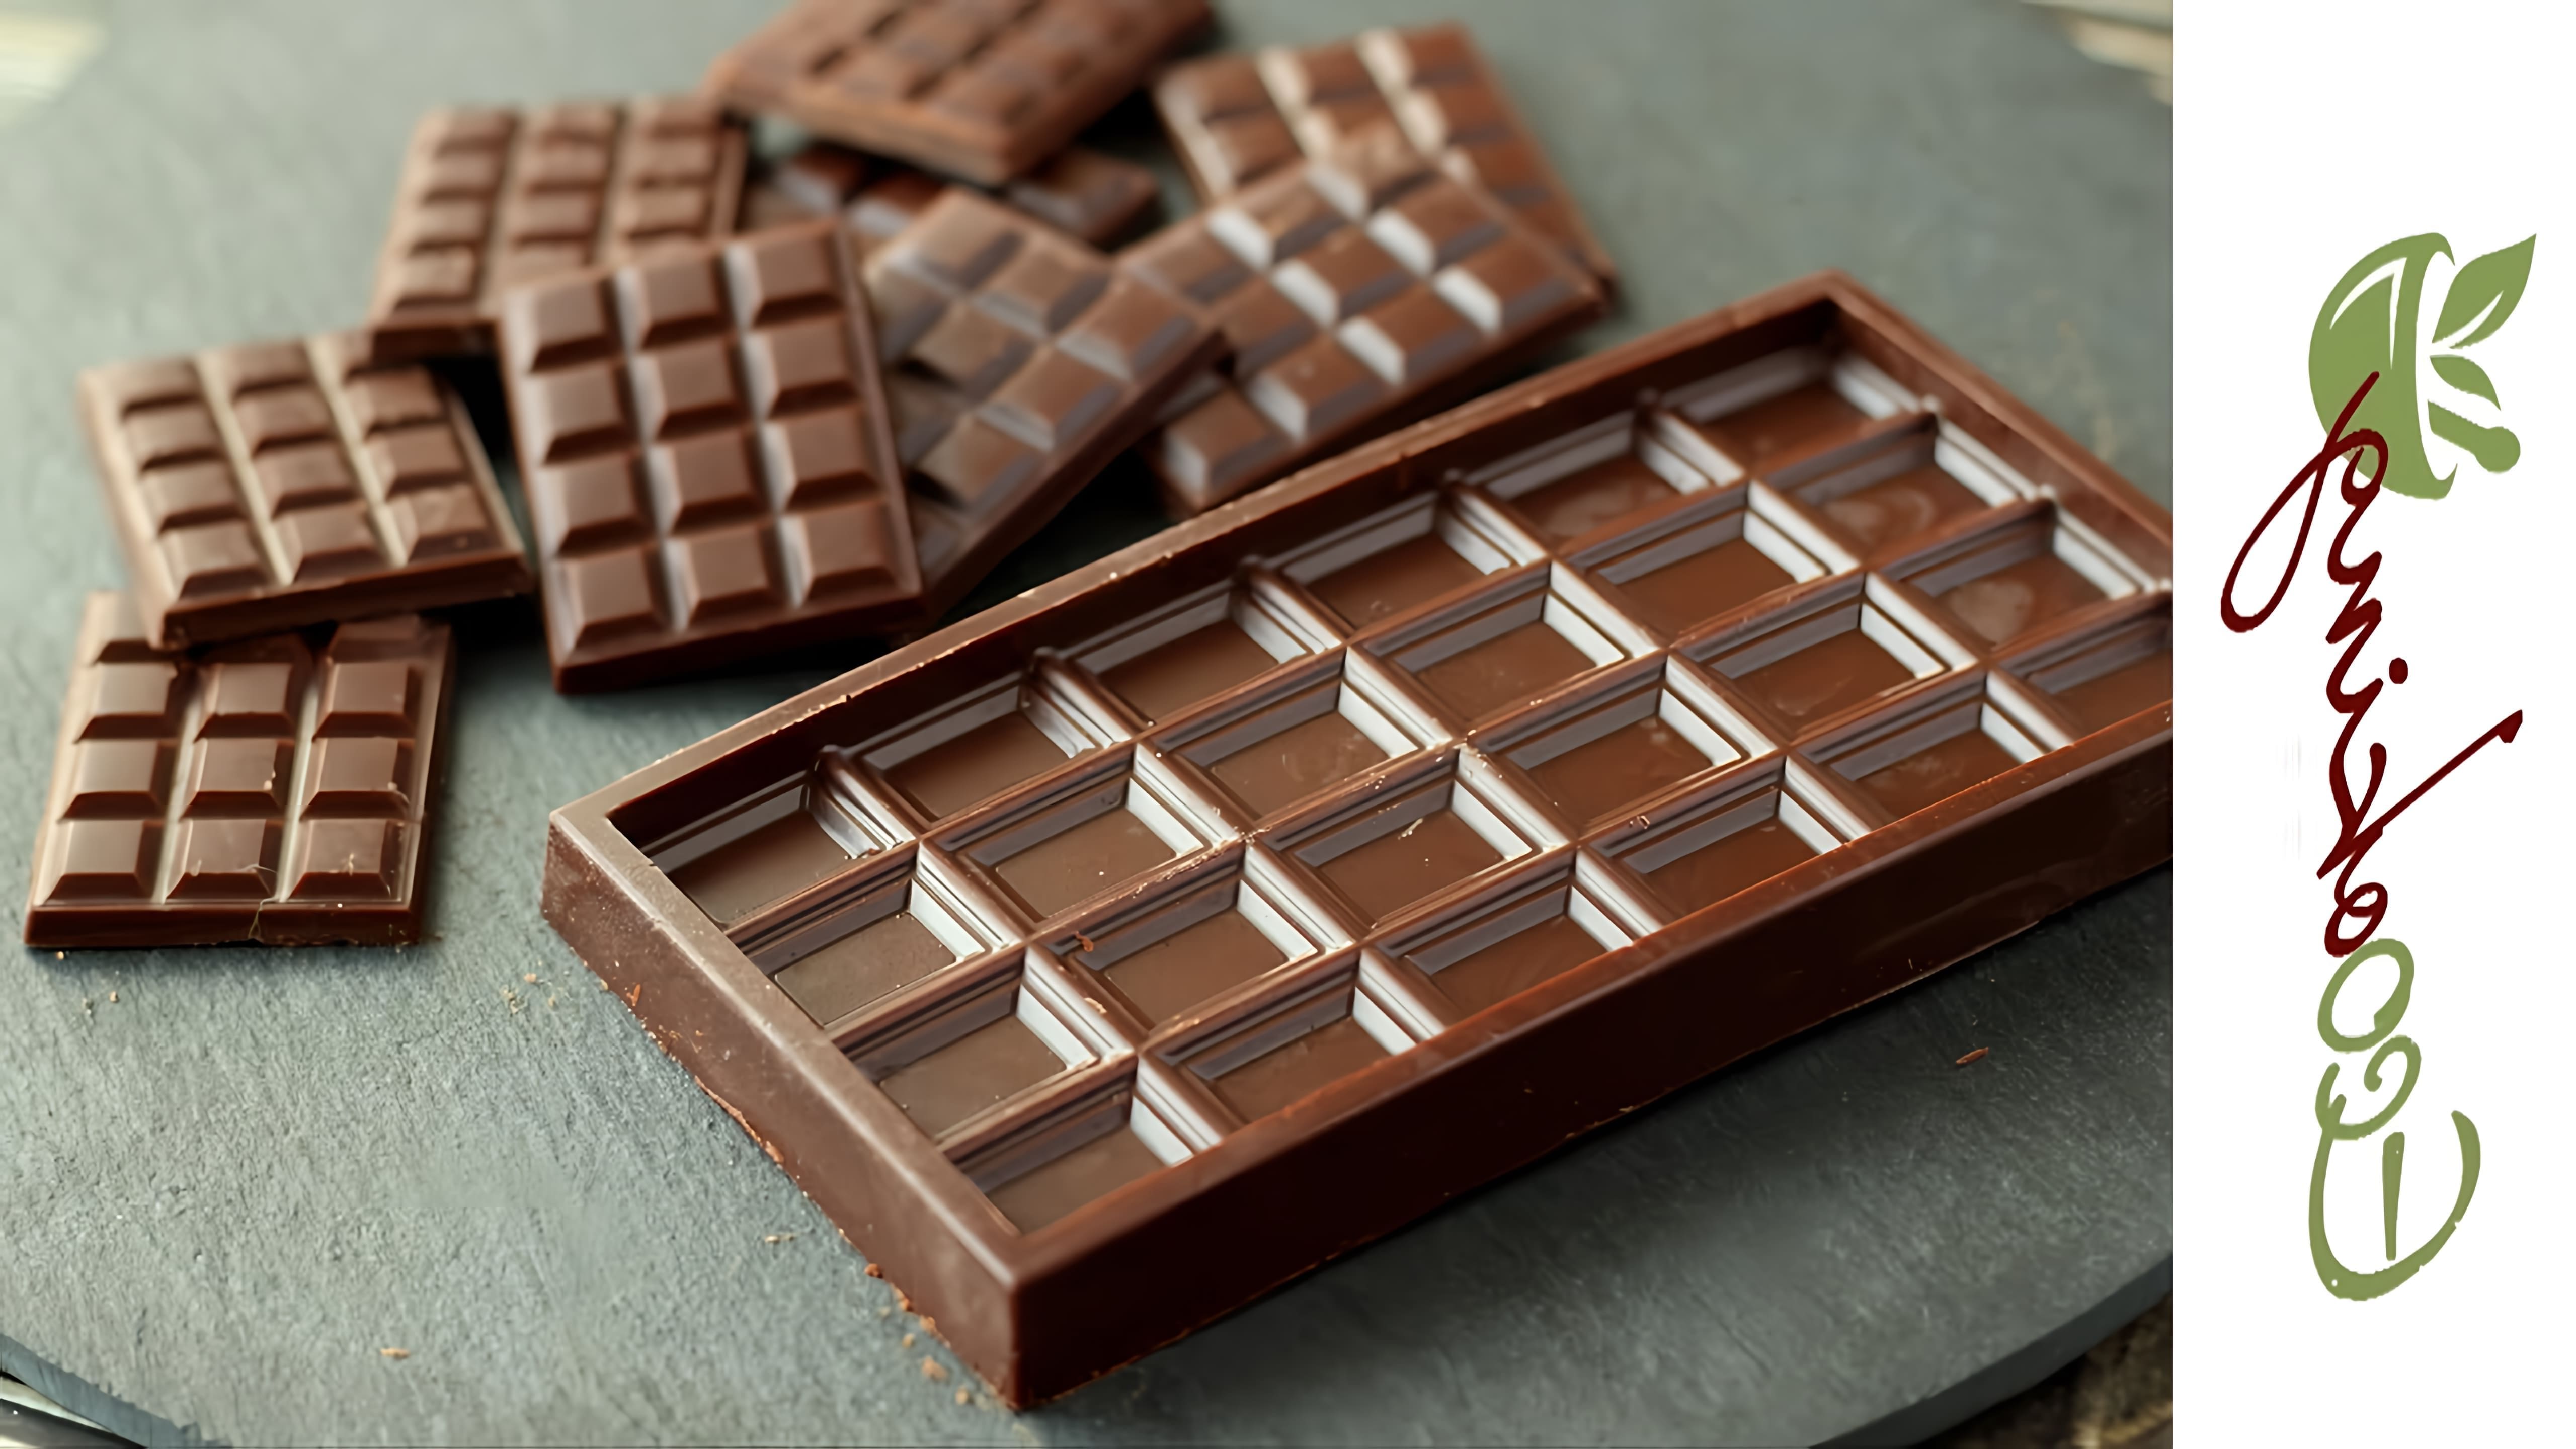 В этом видео демонстрируются два способа приготовления живого черного шоколада с темперированием